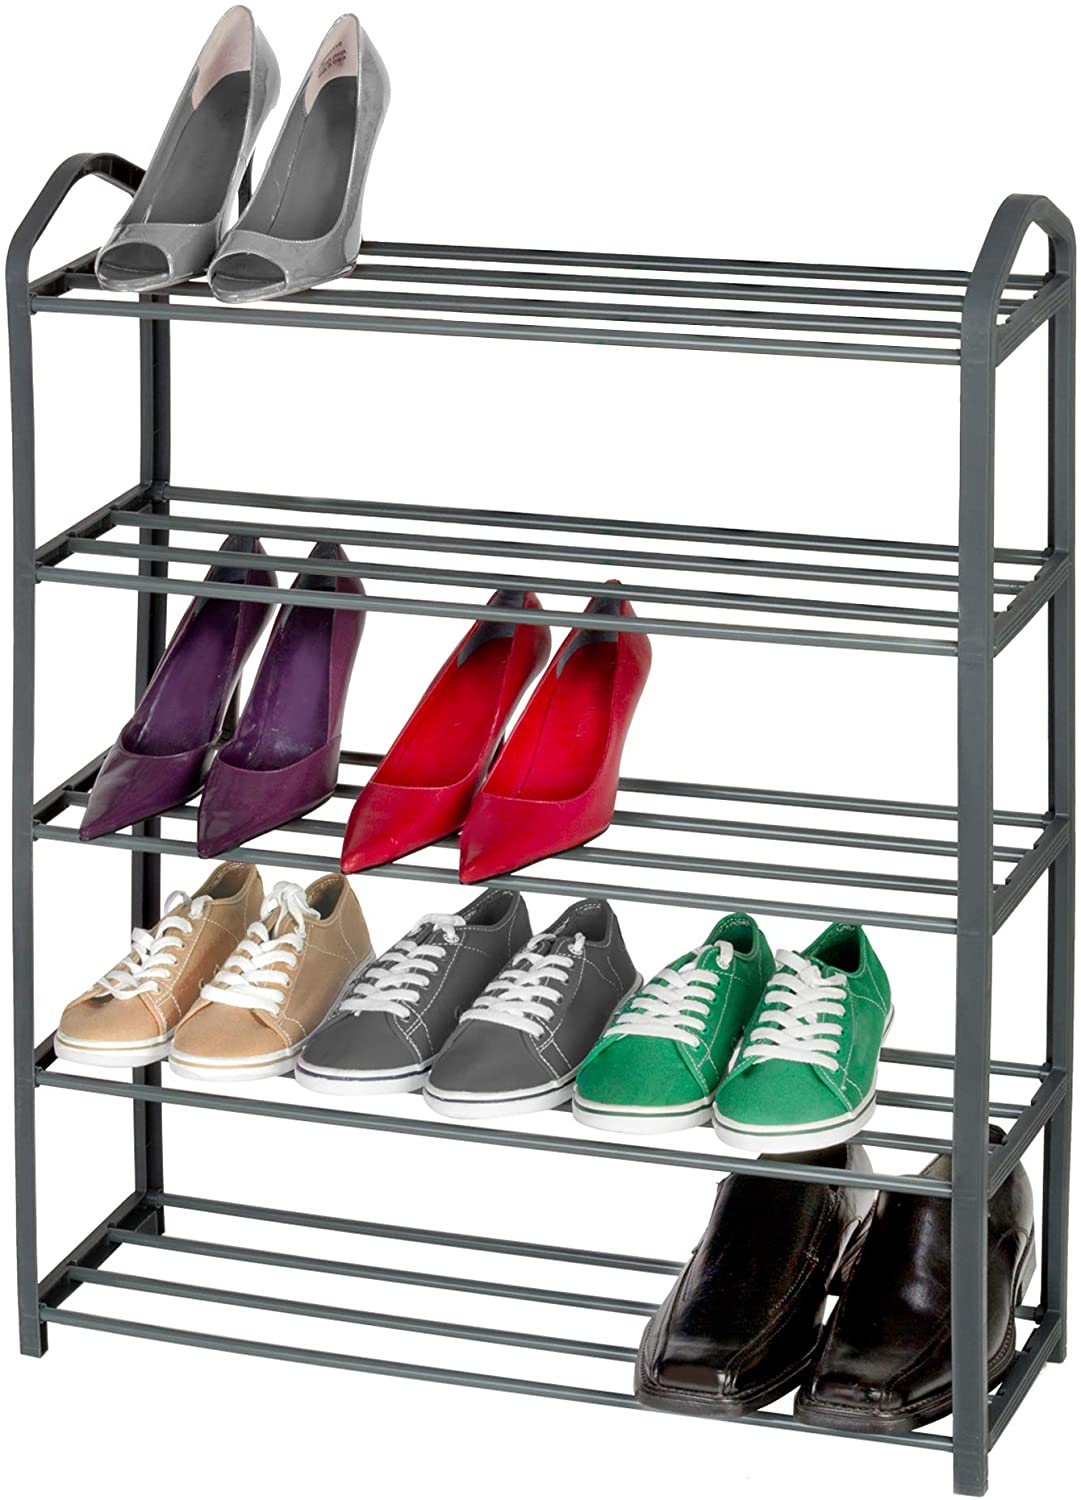 http://www.shopsmartdesign.com/cdn/shop/products/5-tier-steel-shoe-rack-smart-design-storage-5585092-incrementing-number-573533.jpg?v=1679345761